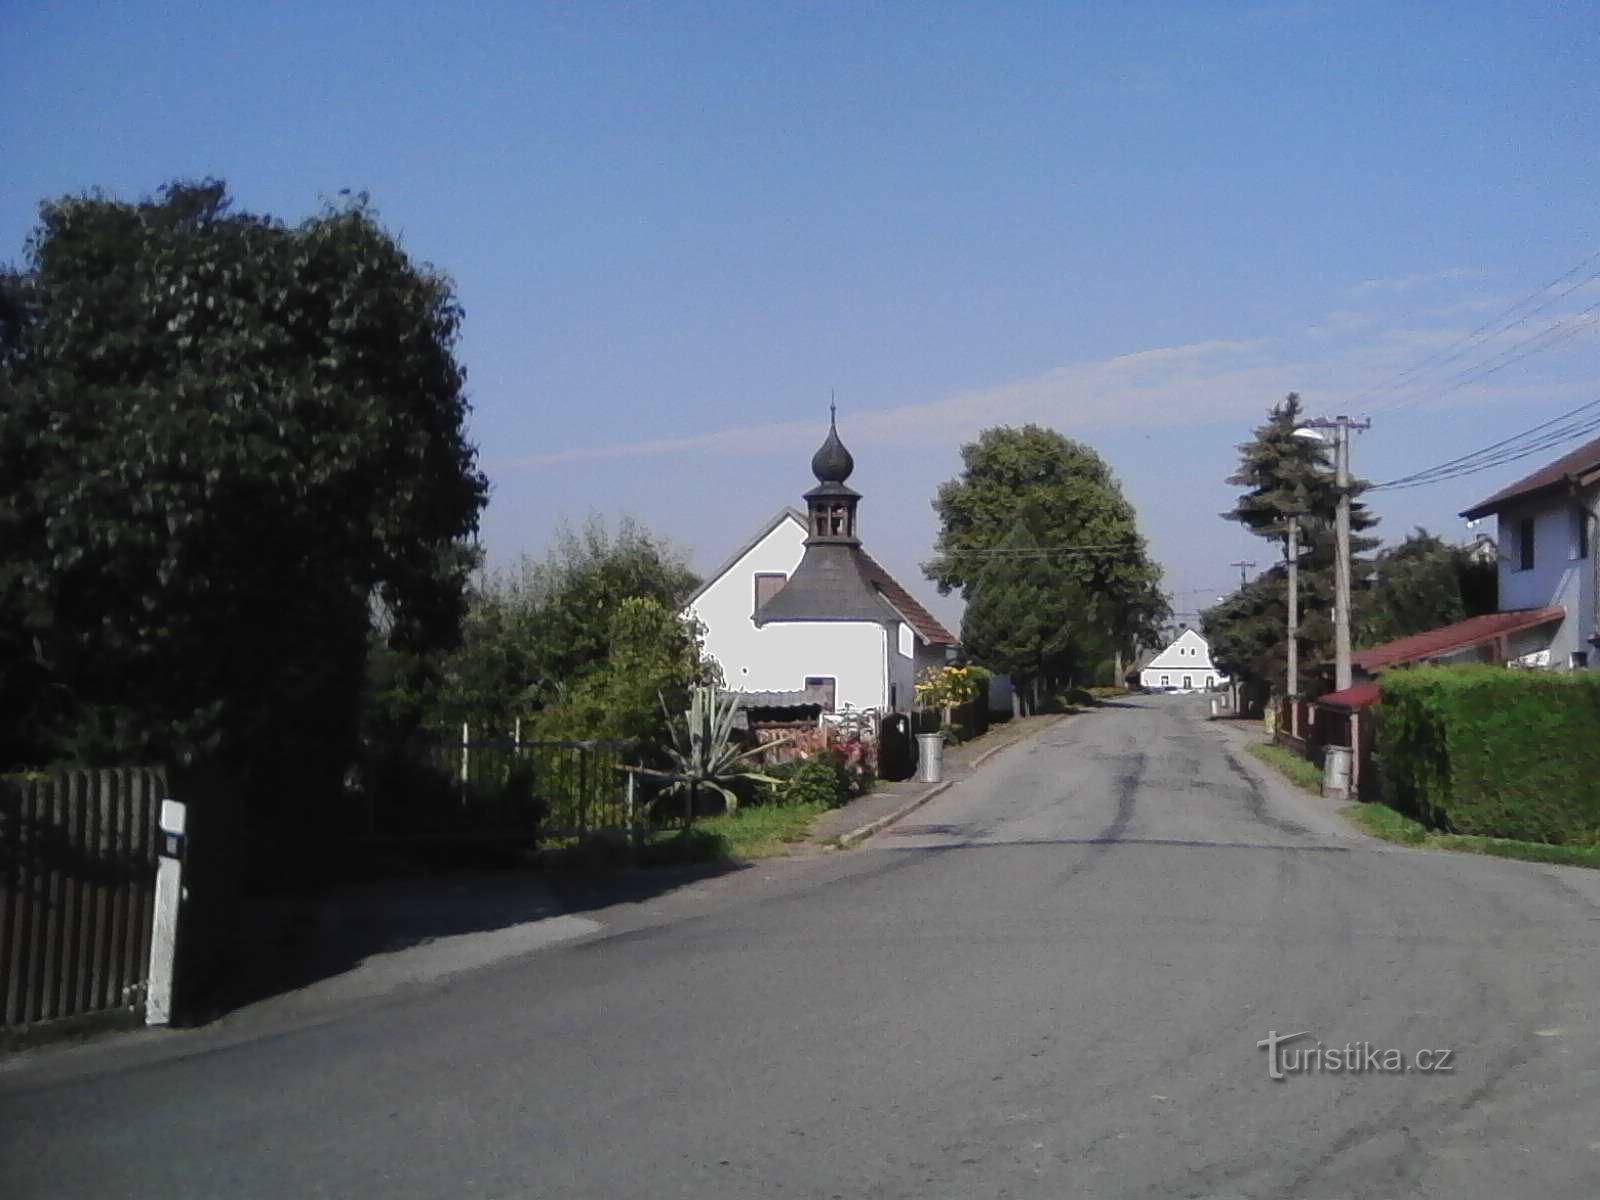 2. Nhà nguyện ở làng Horní Hořice.